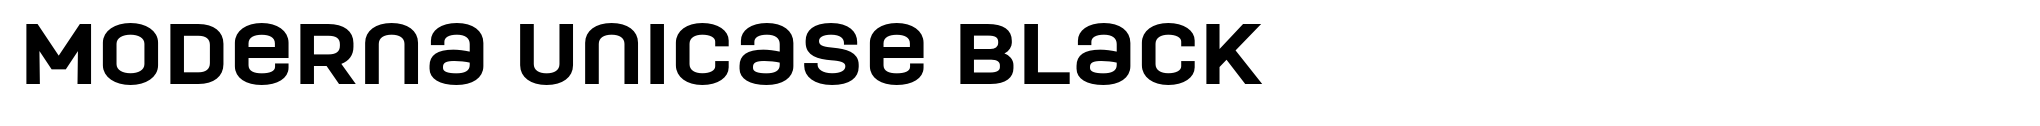 Moderna Unicase Black image